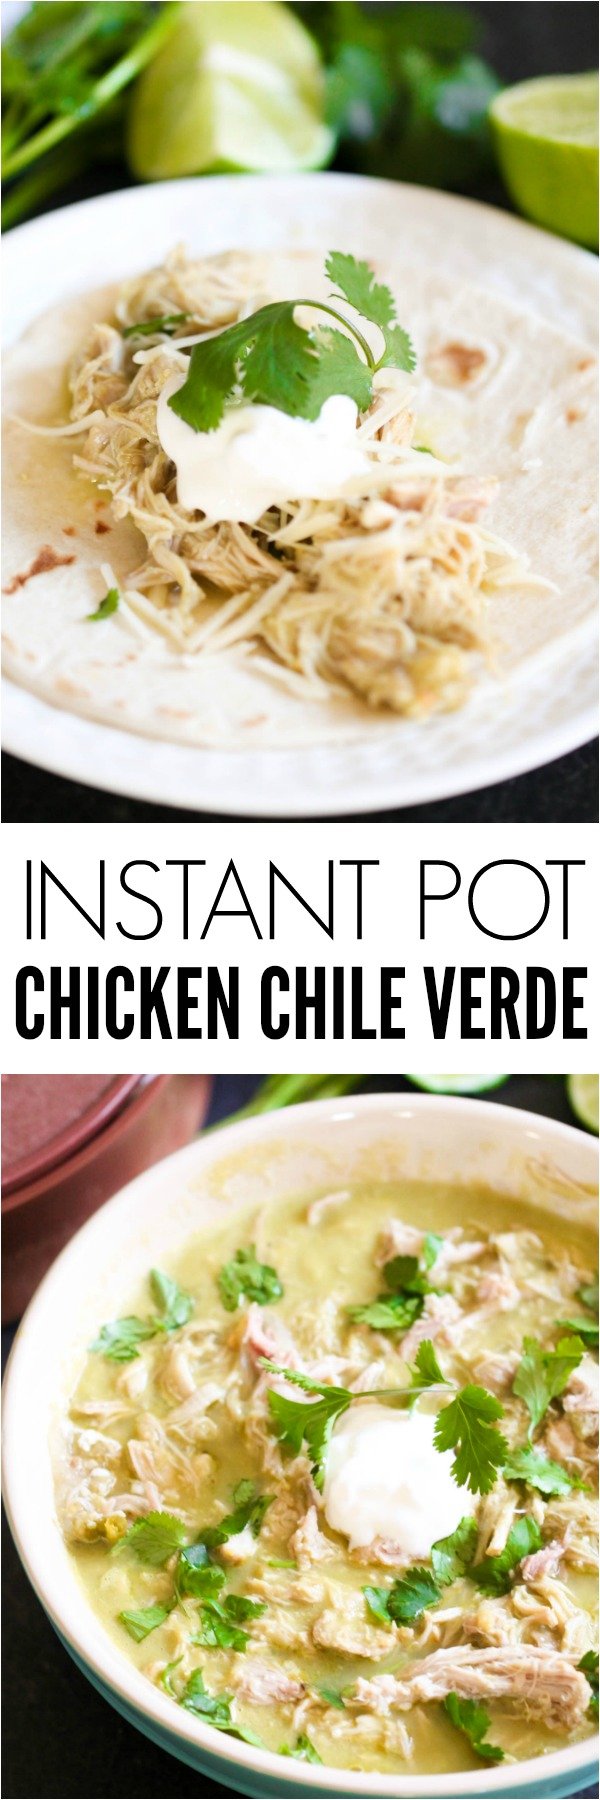 Instant Pot Chicken Chile Verde